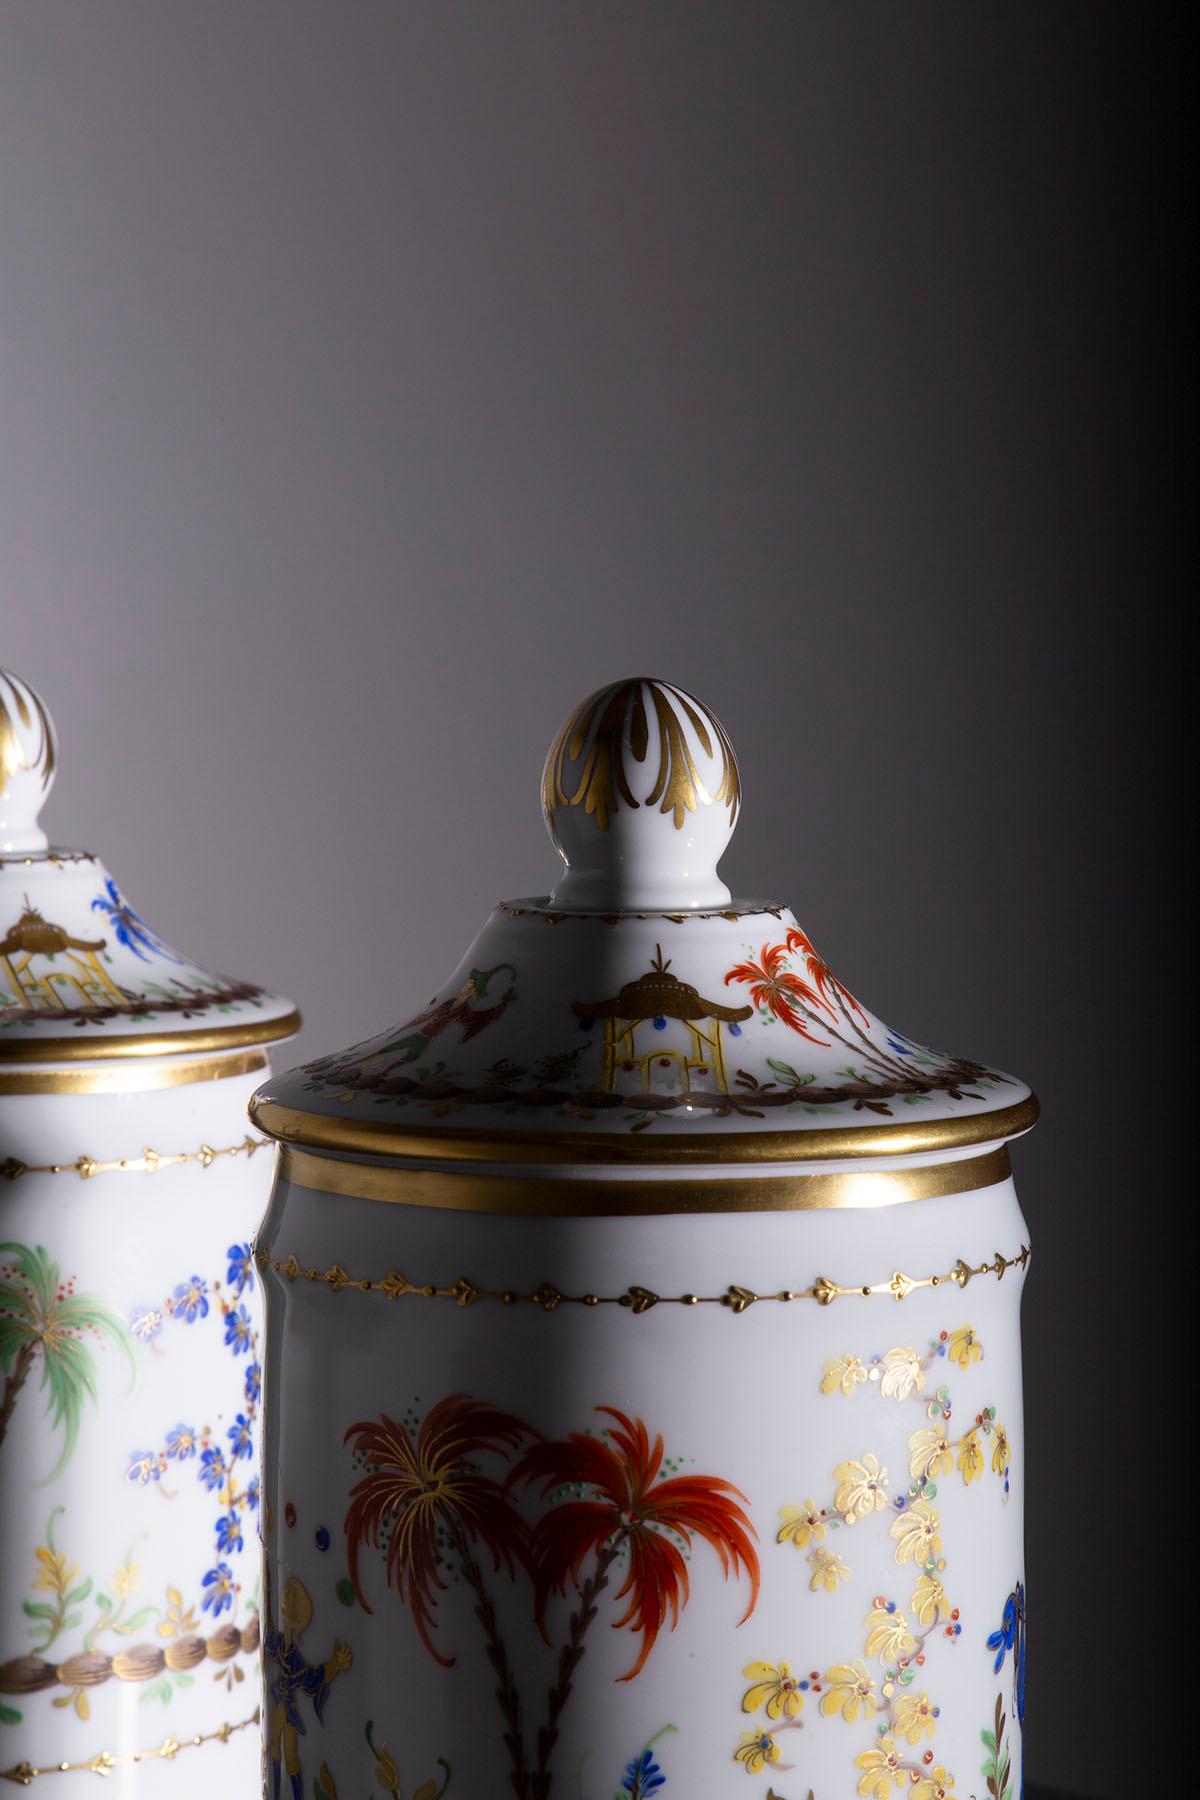 Vor uns entfaltet sich ein Paar Apothekendosen aus exquisitem Porzellan, die die Signatur von Le Tallec tragen - ein authentisches Meisterwerk, das über ein reines Kunstwerk hinausgeht. Diese Gläser verkörpern eine fesselnde Geschichte und zeitlose